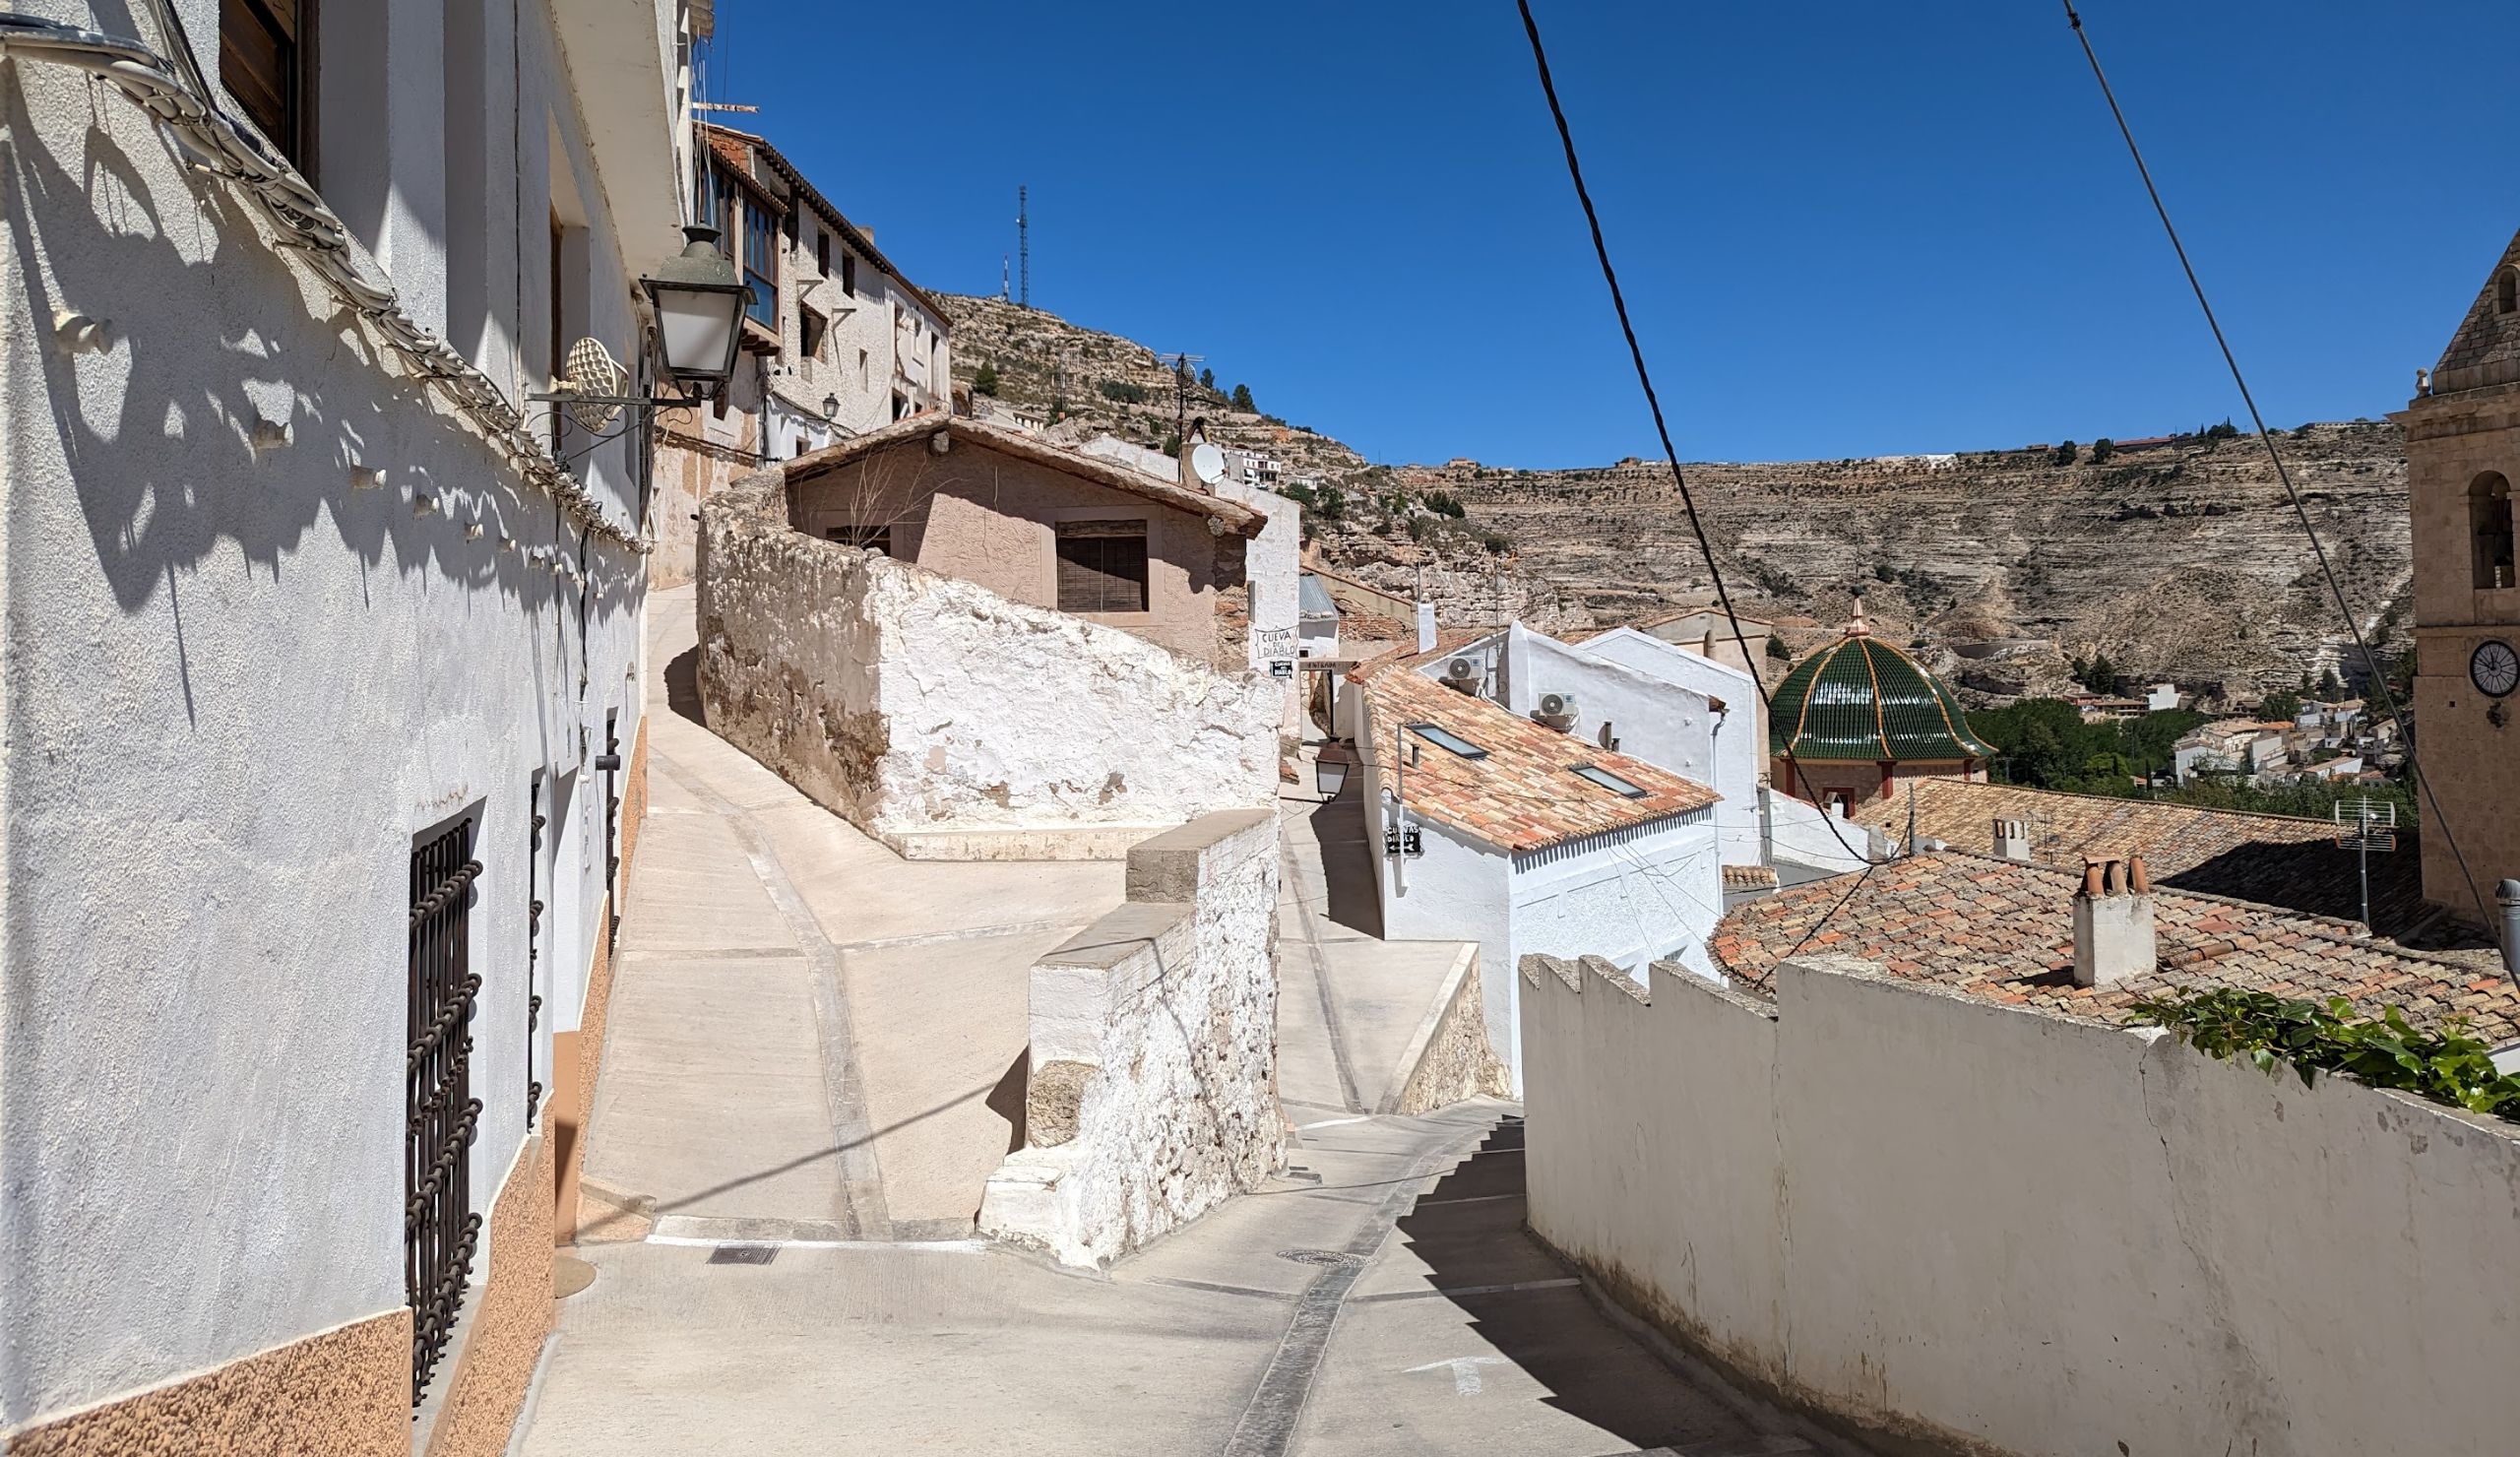 Calle empedrada y casas en pueblo español